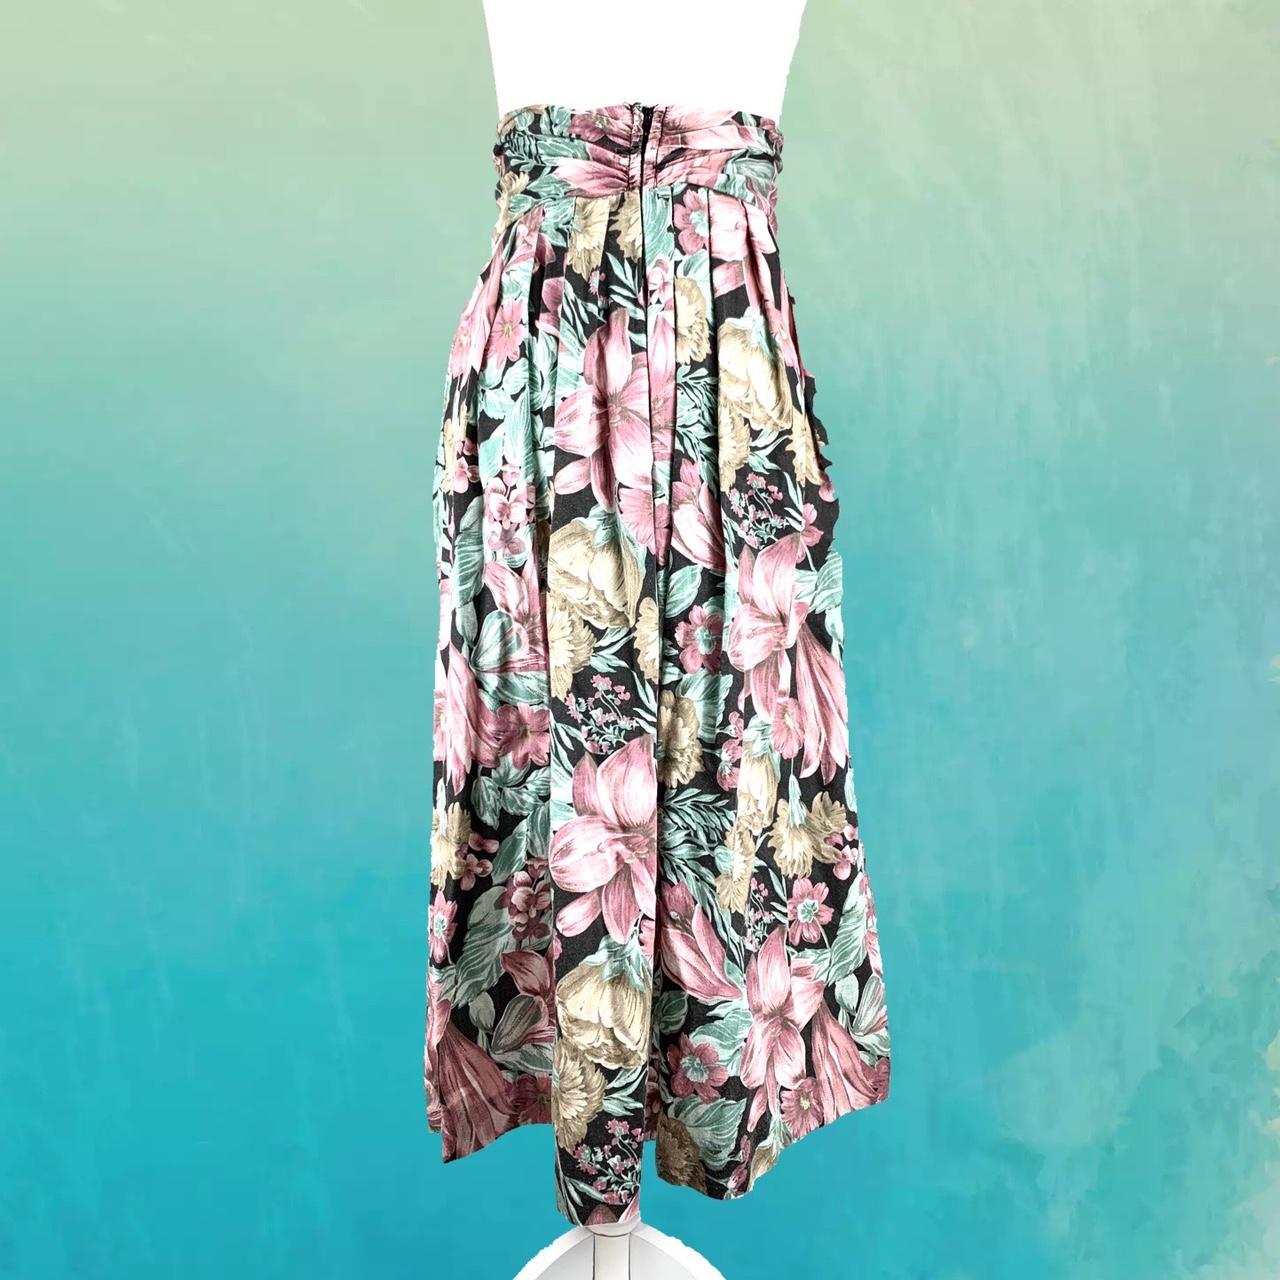 Product Image 2 - 80s Vintage Midi Skirt, Pastel